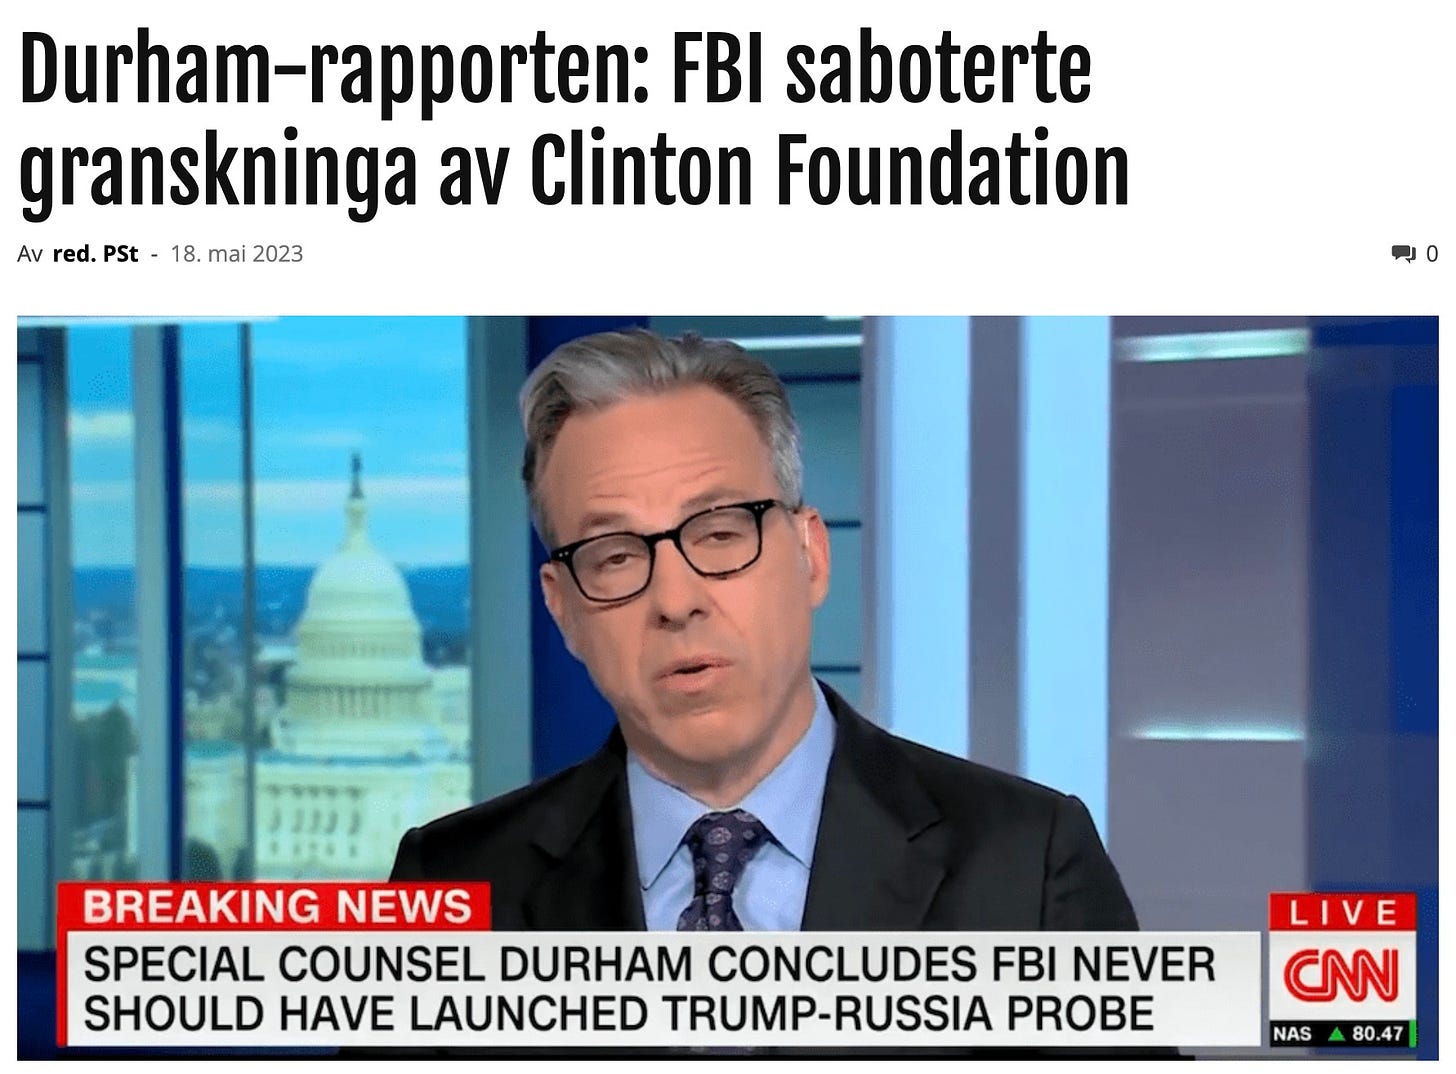 Kan være et bilde av ‎1 person og ‎tekst som sier '‎Durham-rapporten: FBI saboterte granskninga av Clinton Foundation Av red. PSt 18. mai 2023 ייייי BREAKING NEWS SPECIAL COUNSEL DURHAM CONCLUDES FBI NEVER SHOULD HAVE LAUNCHED TRUMP-RUSSIA PROBE LIVE CNN NAS 80.47‎'‎‎